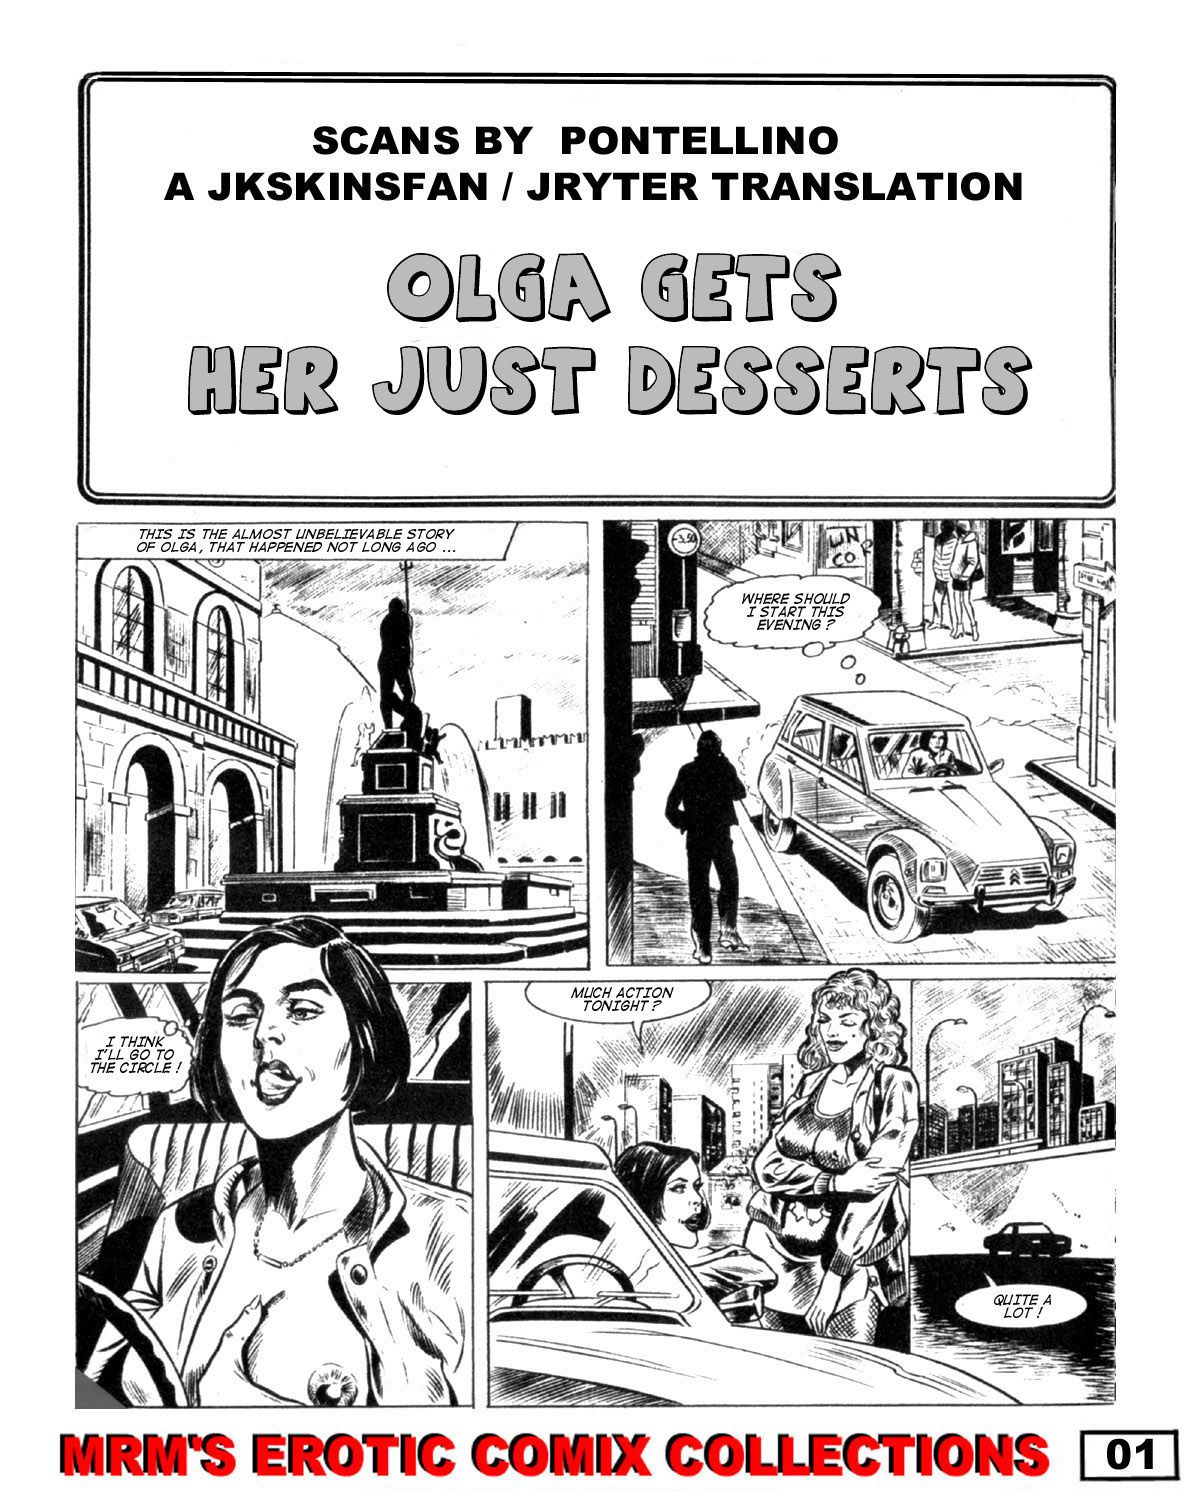 OLGA GETS HER JUST DESSERTS - A JKSKINSFAN / JRYTER TRANSLATION 3